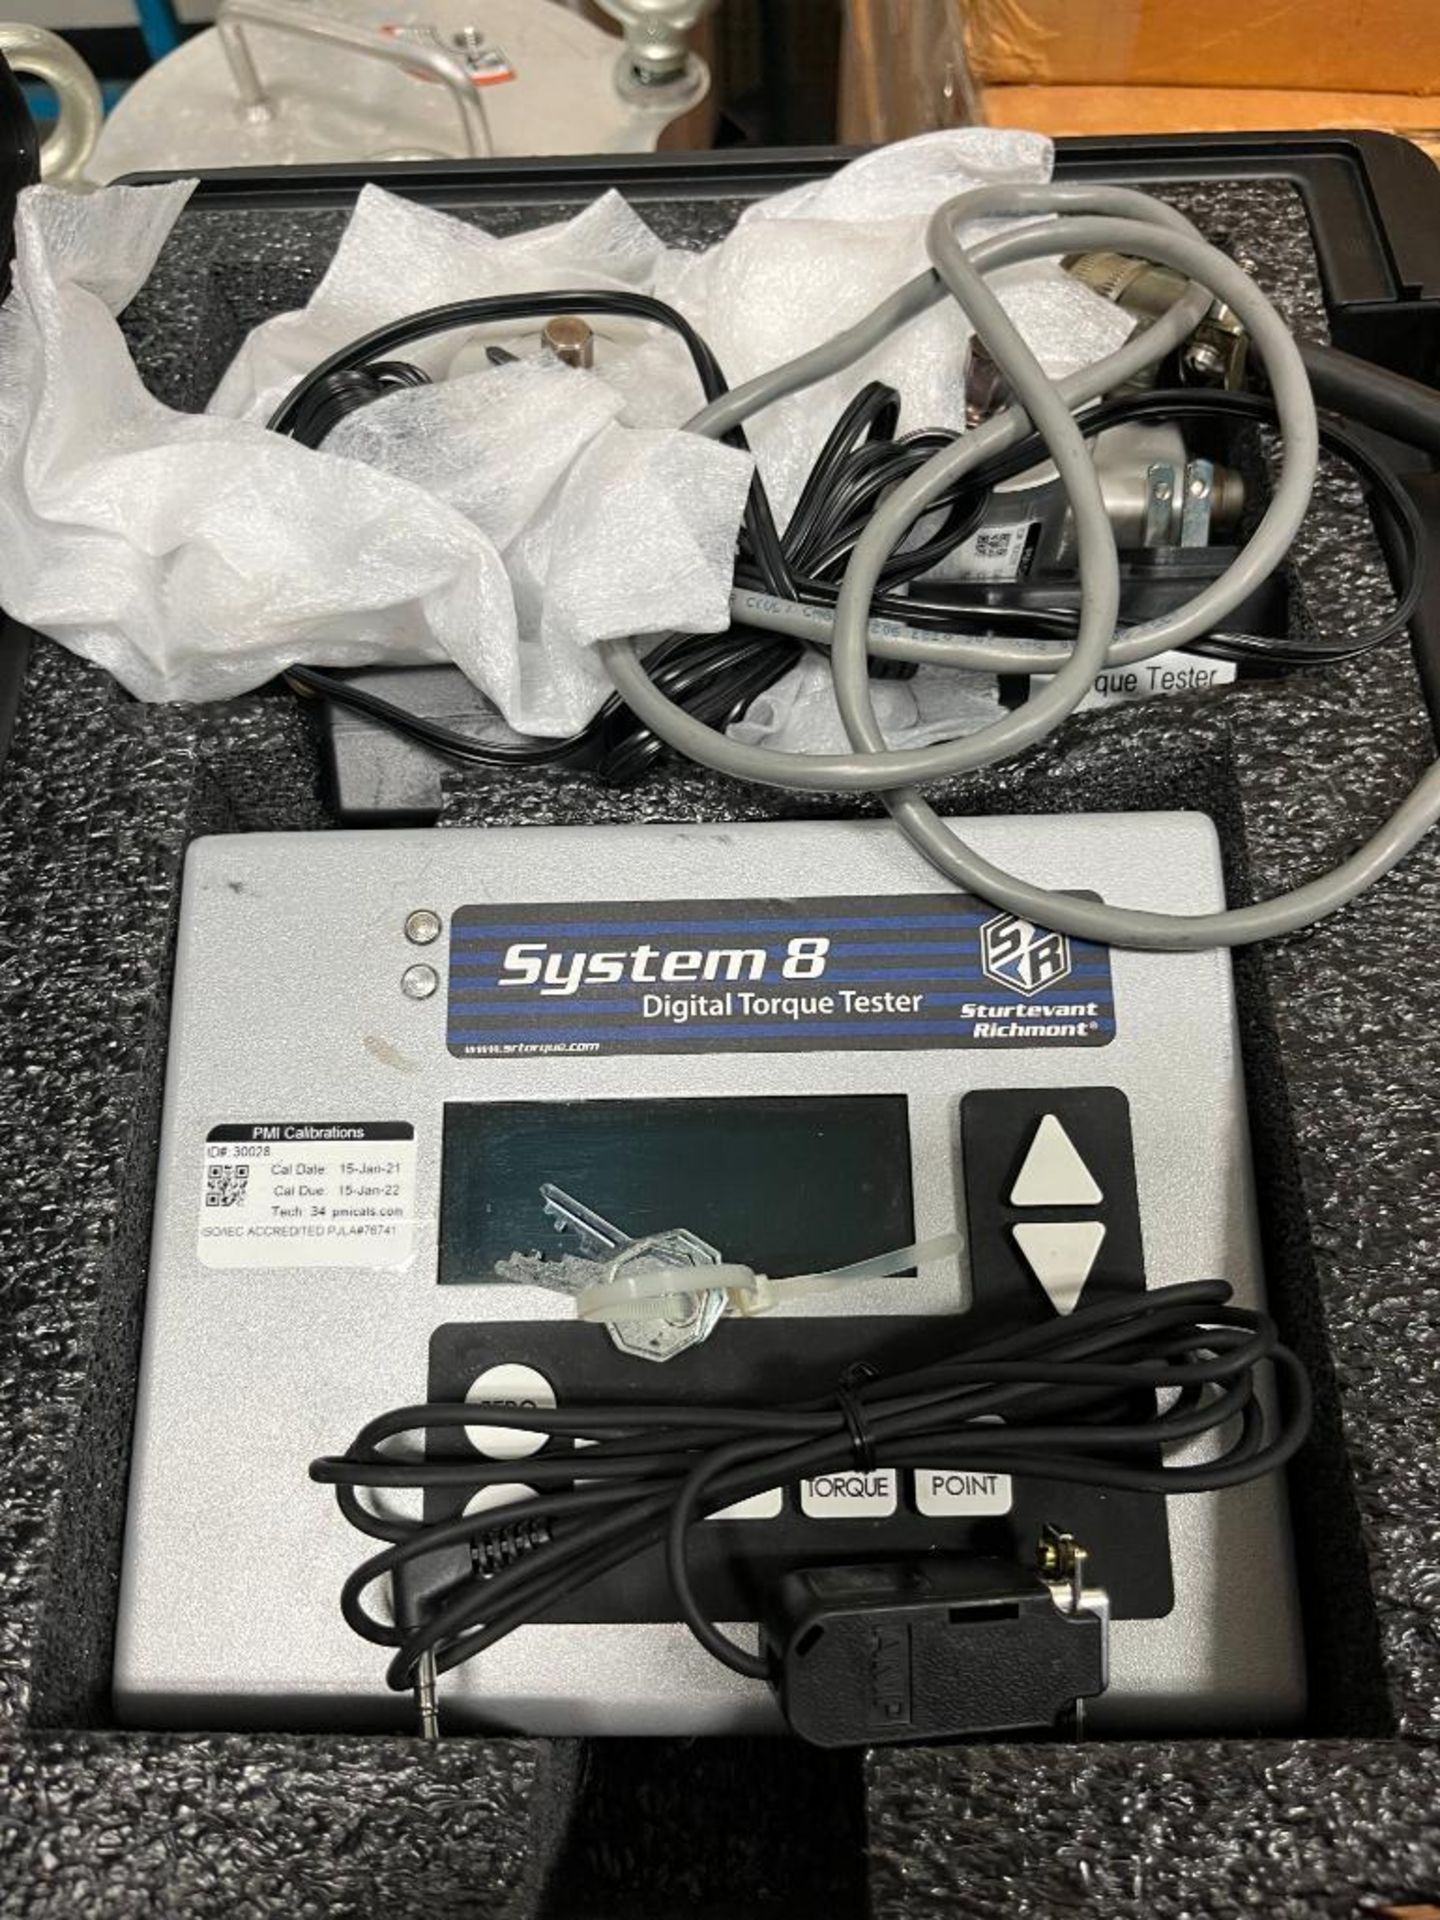 Sturtevant Richmont System 8 Digital Torque Tester, Model 10600, S/N 30028, Input: 6 VDC - Image 2 of 3